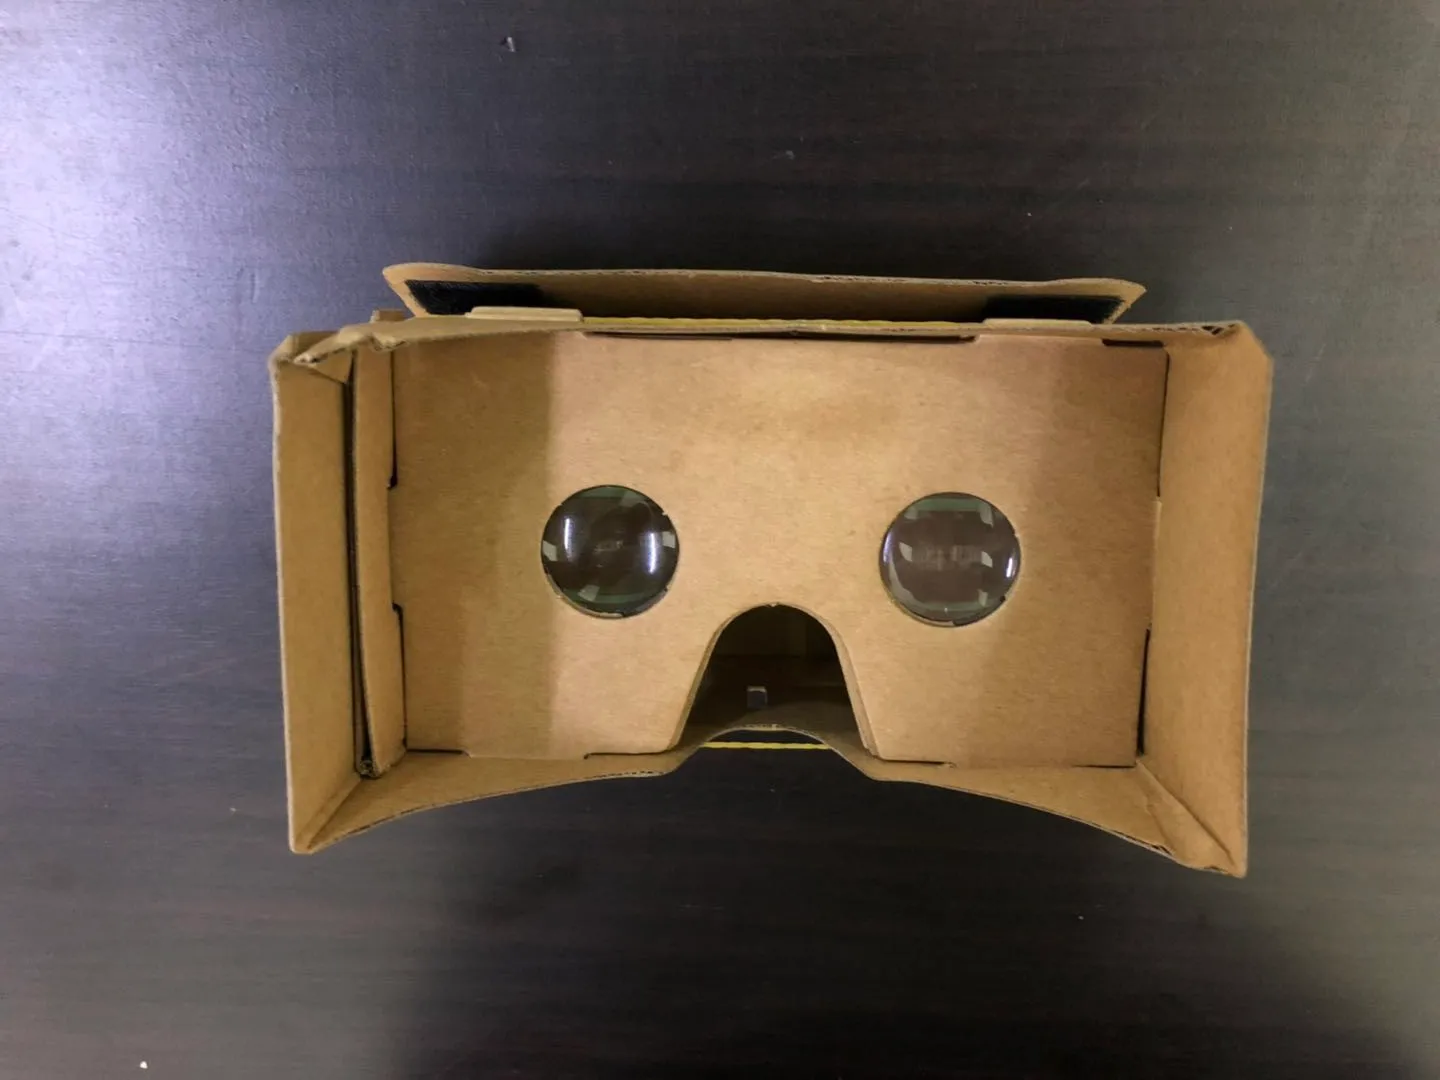 Modelli 3D gratuiti Occhiali 3D Occhiali VR Fai da te Google Cardboard Telefono cellulare Realtà virtuale Cartone non ufficiale VR Toolkit Occhiali 3D CCA1785 B-XY